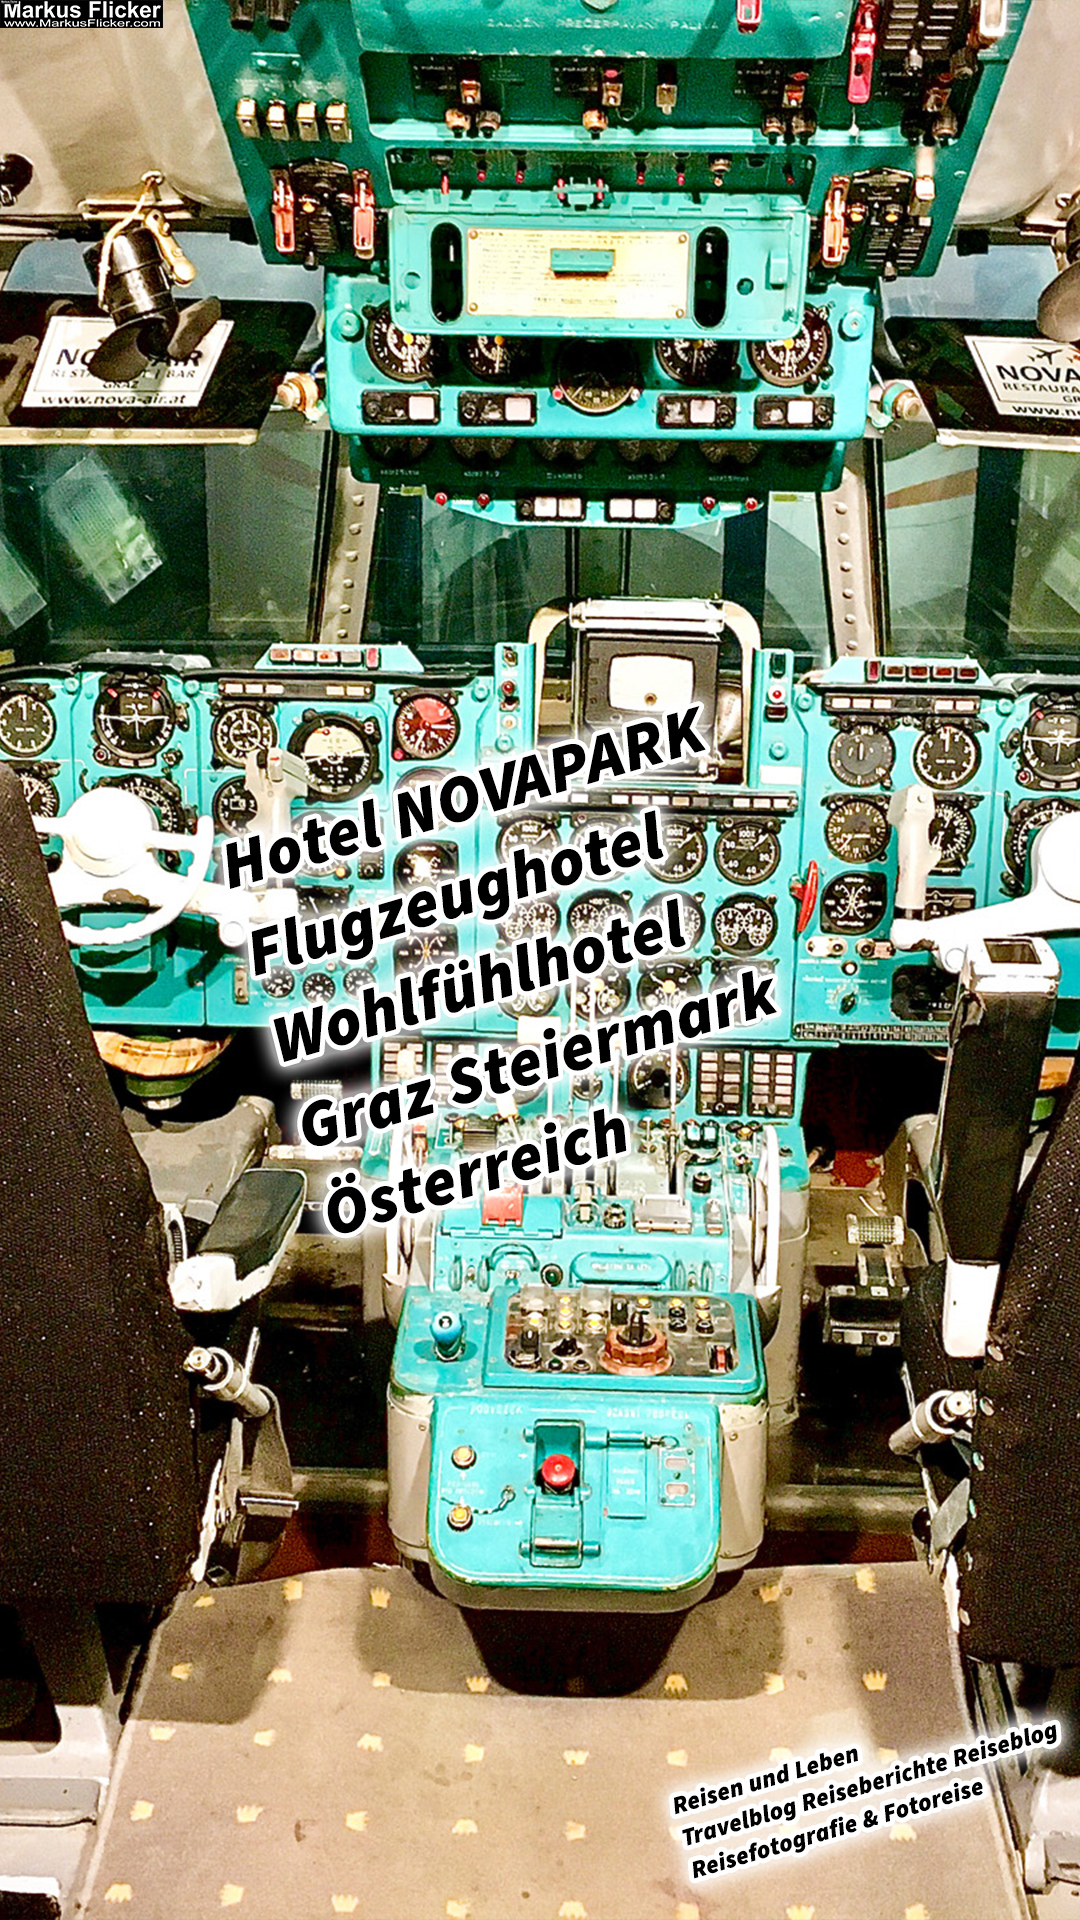 Hotel NOVAPARK Flugzeughotel Wohlfühlhotel Graz Steiermark Österreich